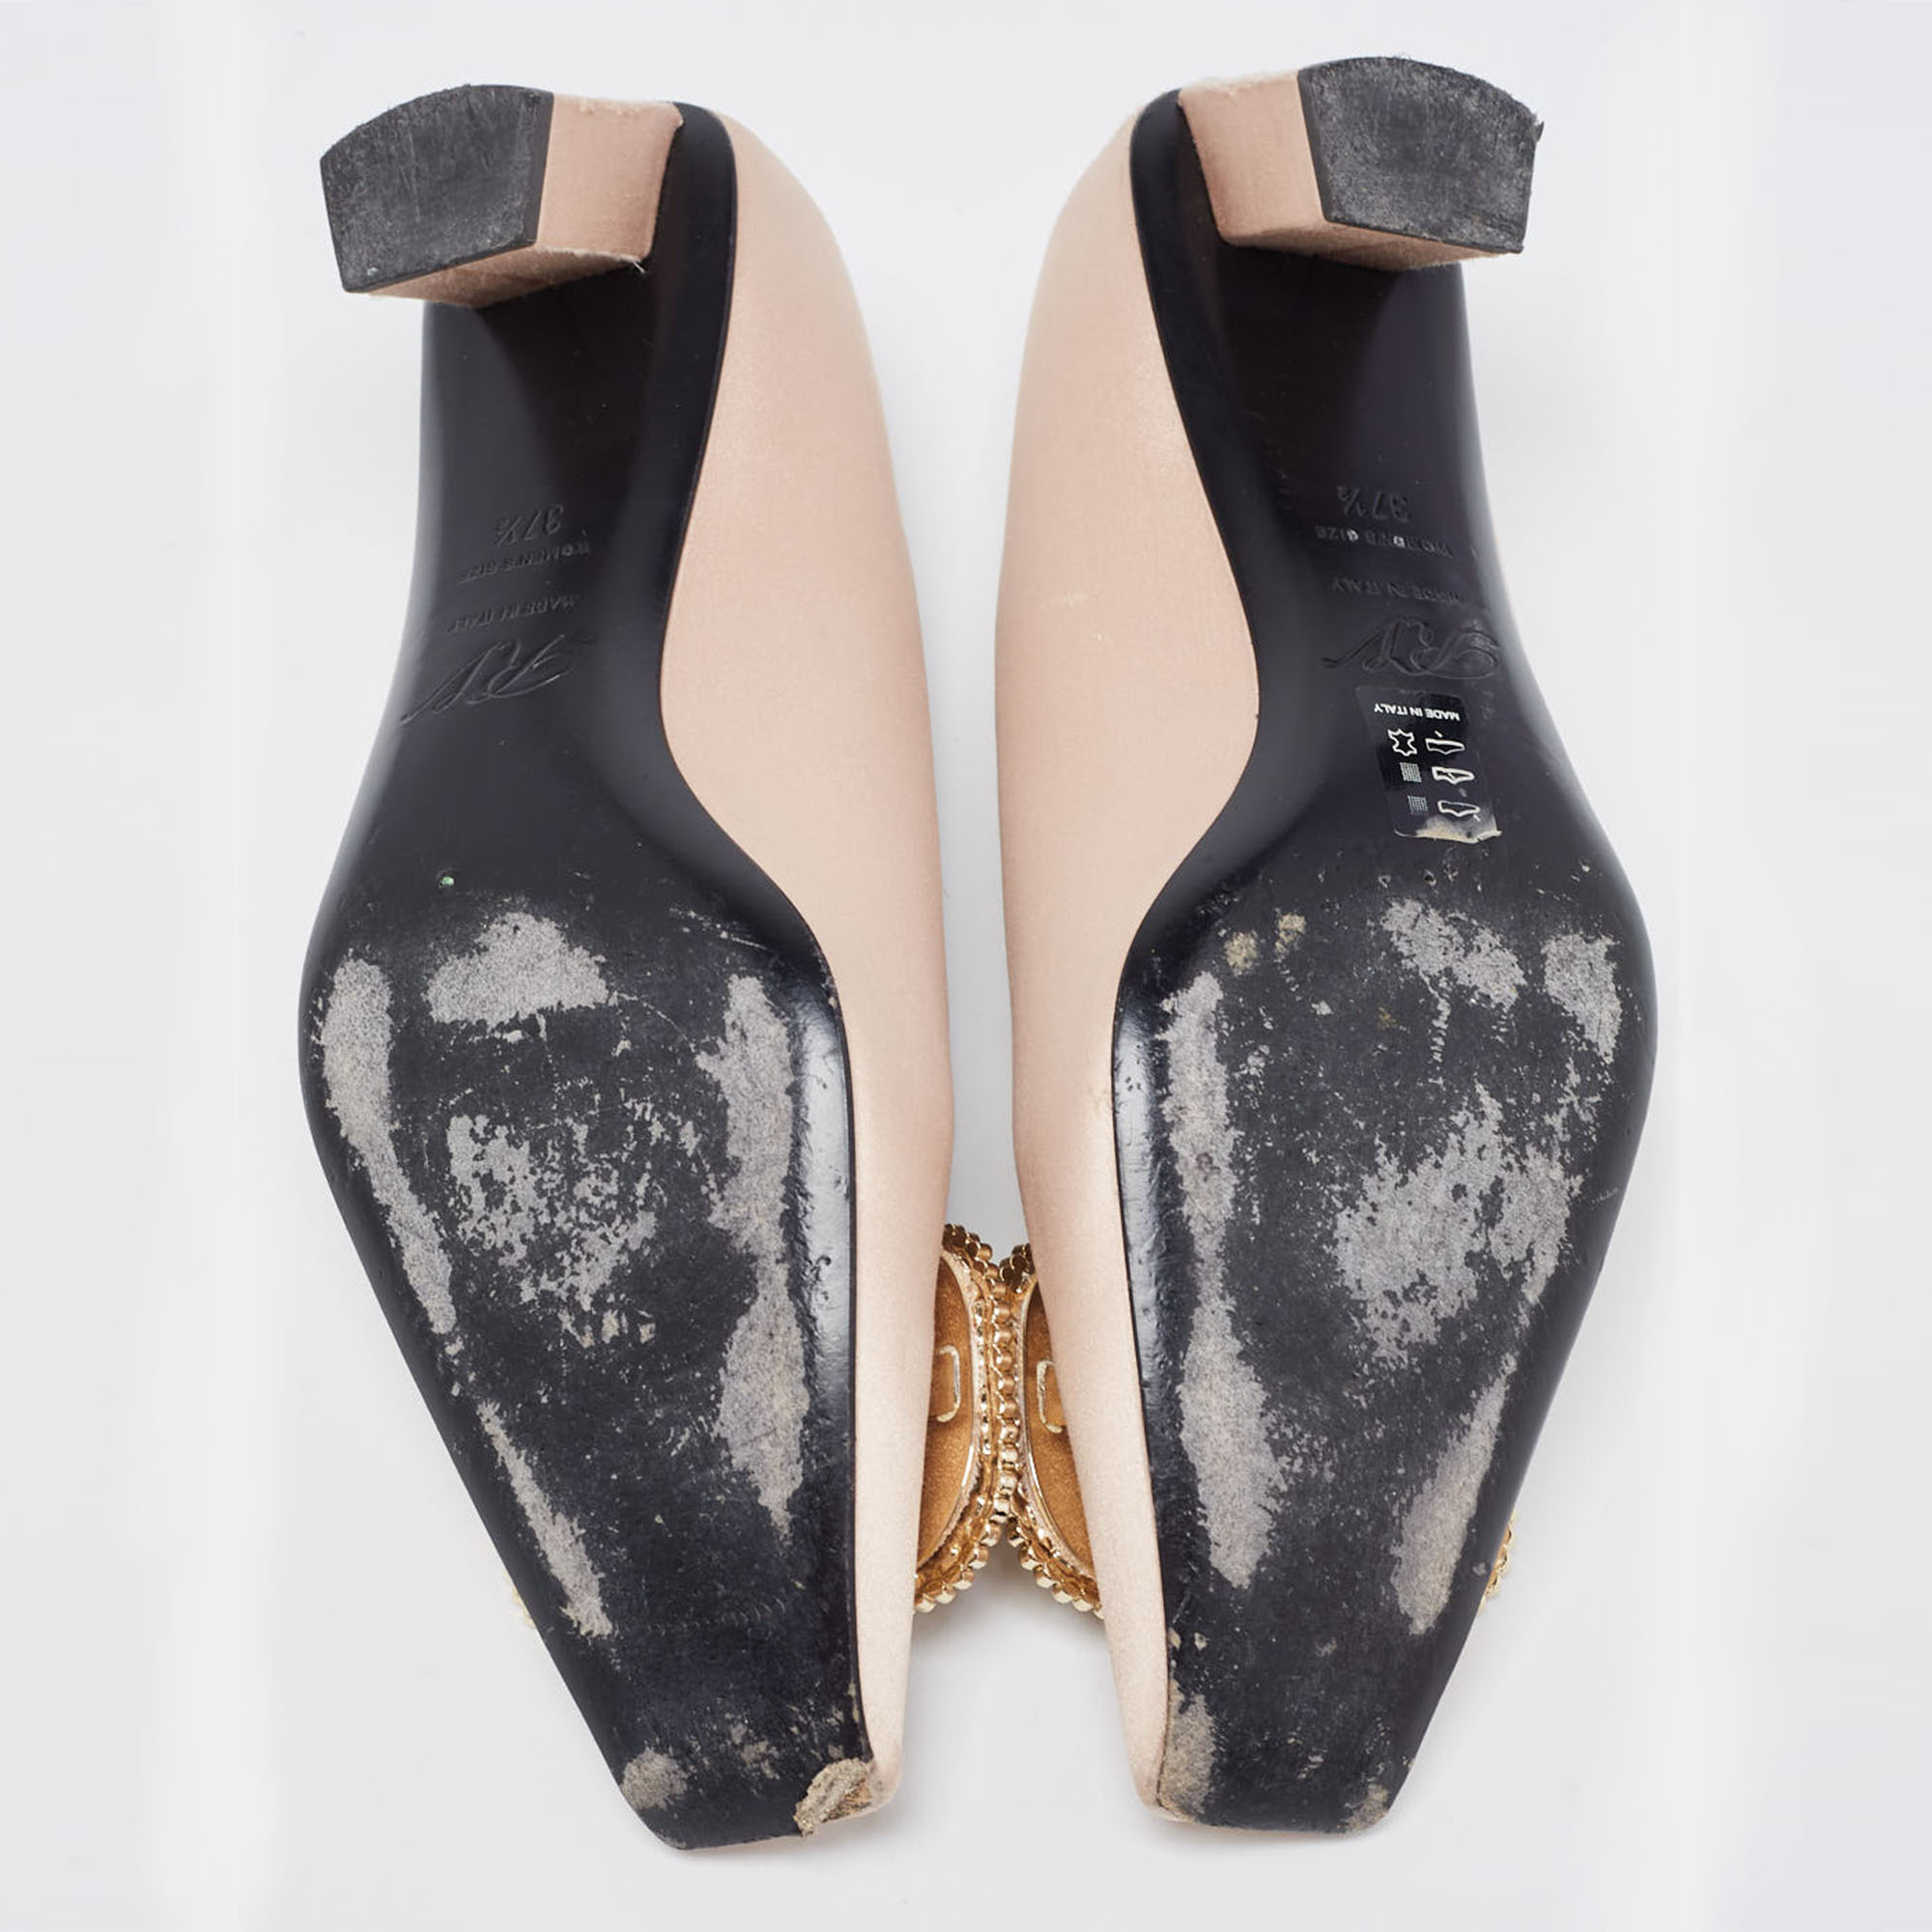 Roger Vivier Beige Satin Crystal Embellished Pointed Toe Pumps Size 37.5